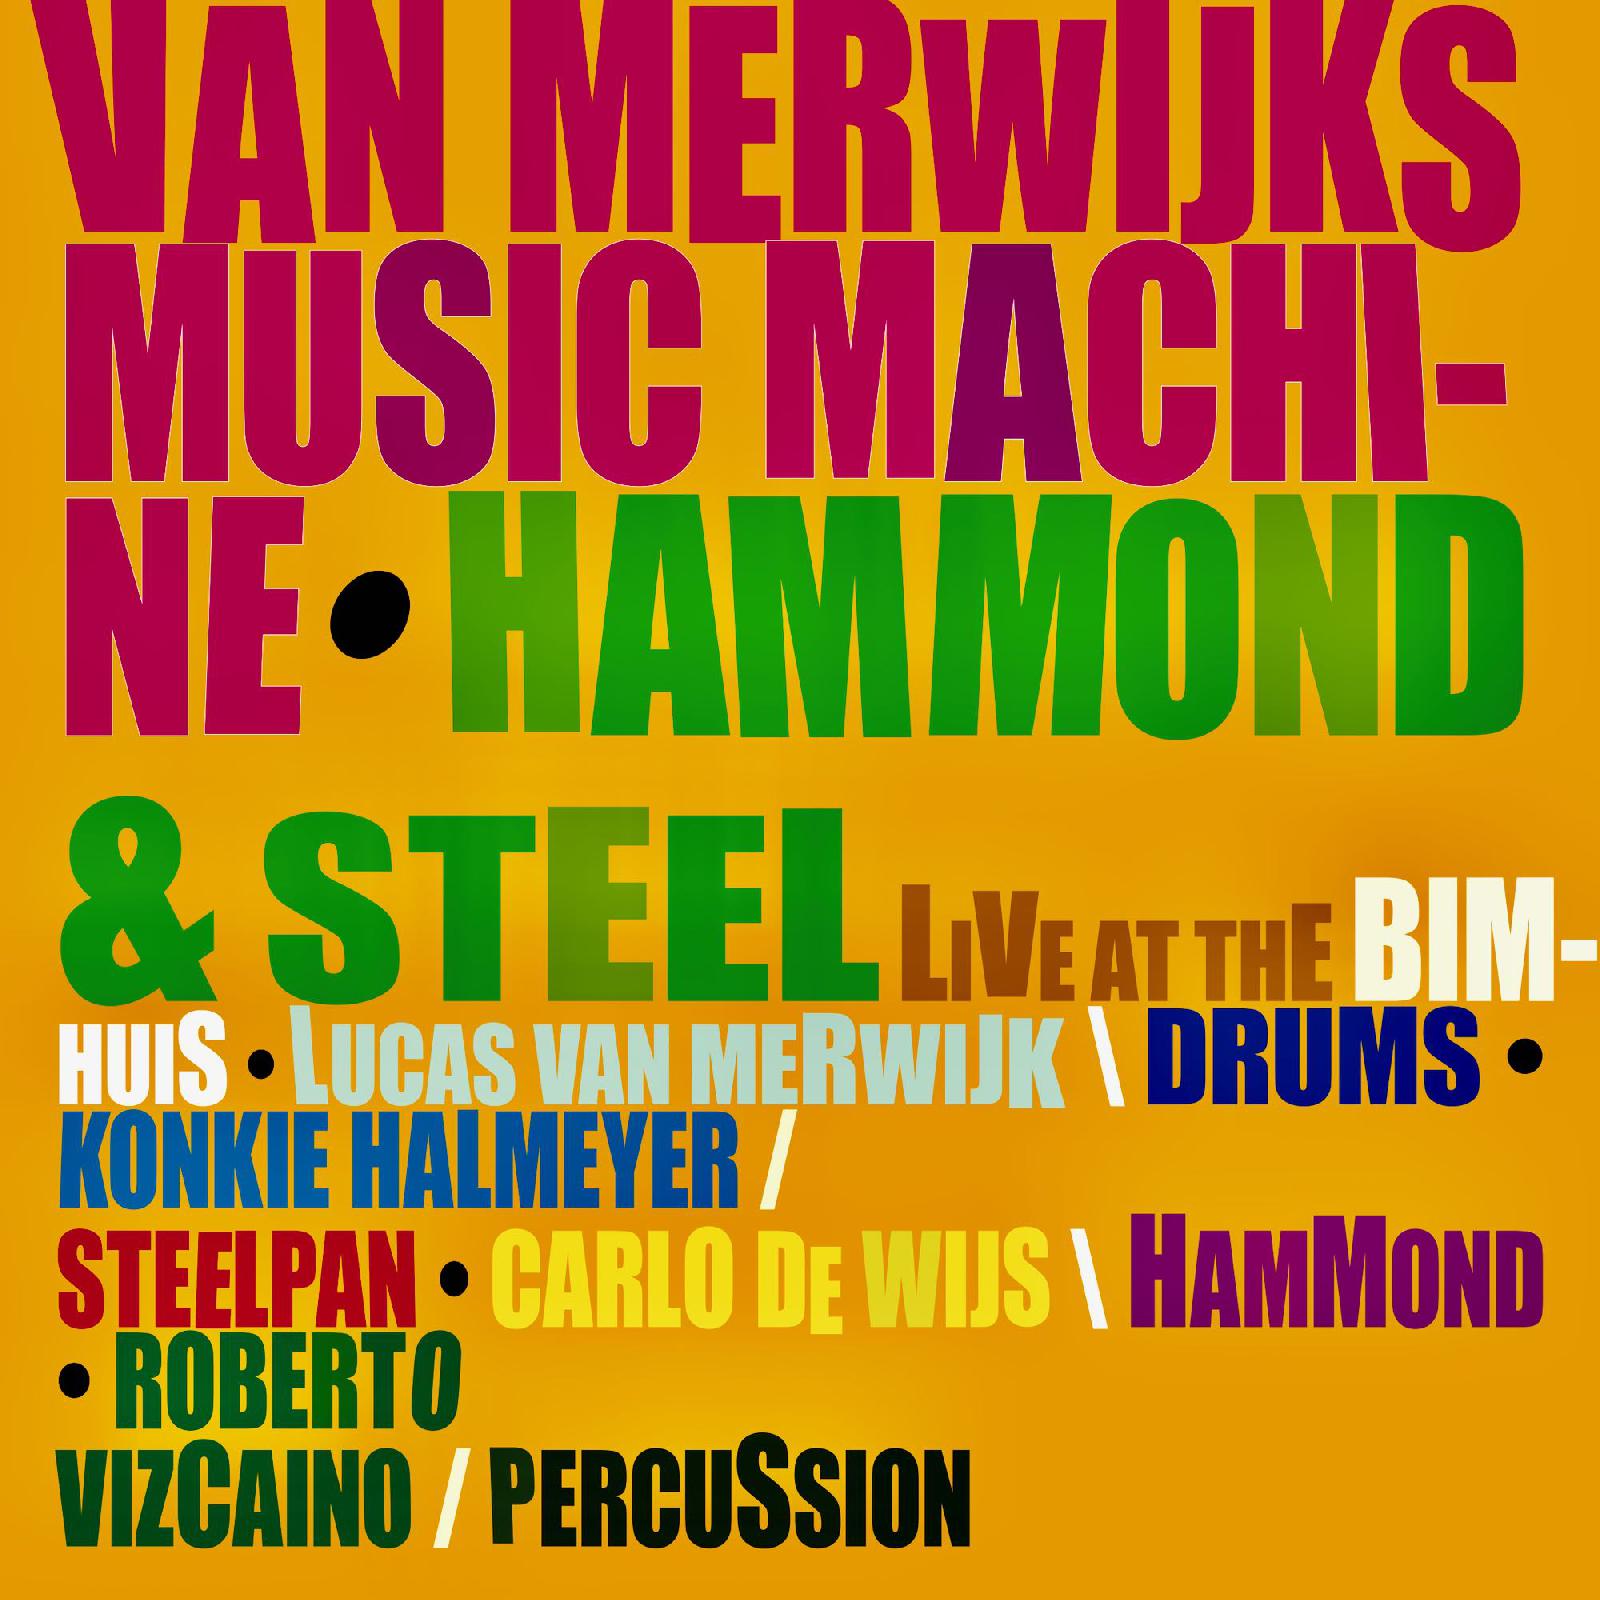 Hammond & Steel